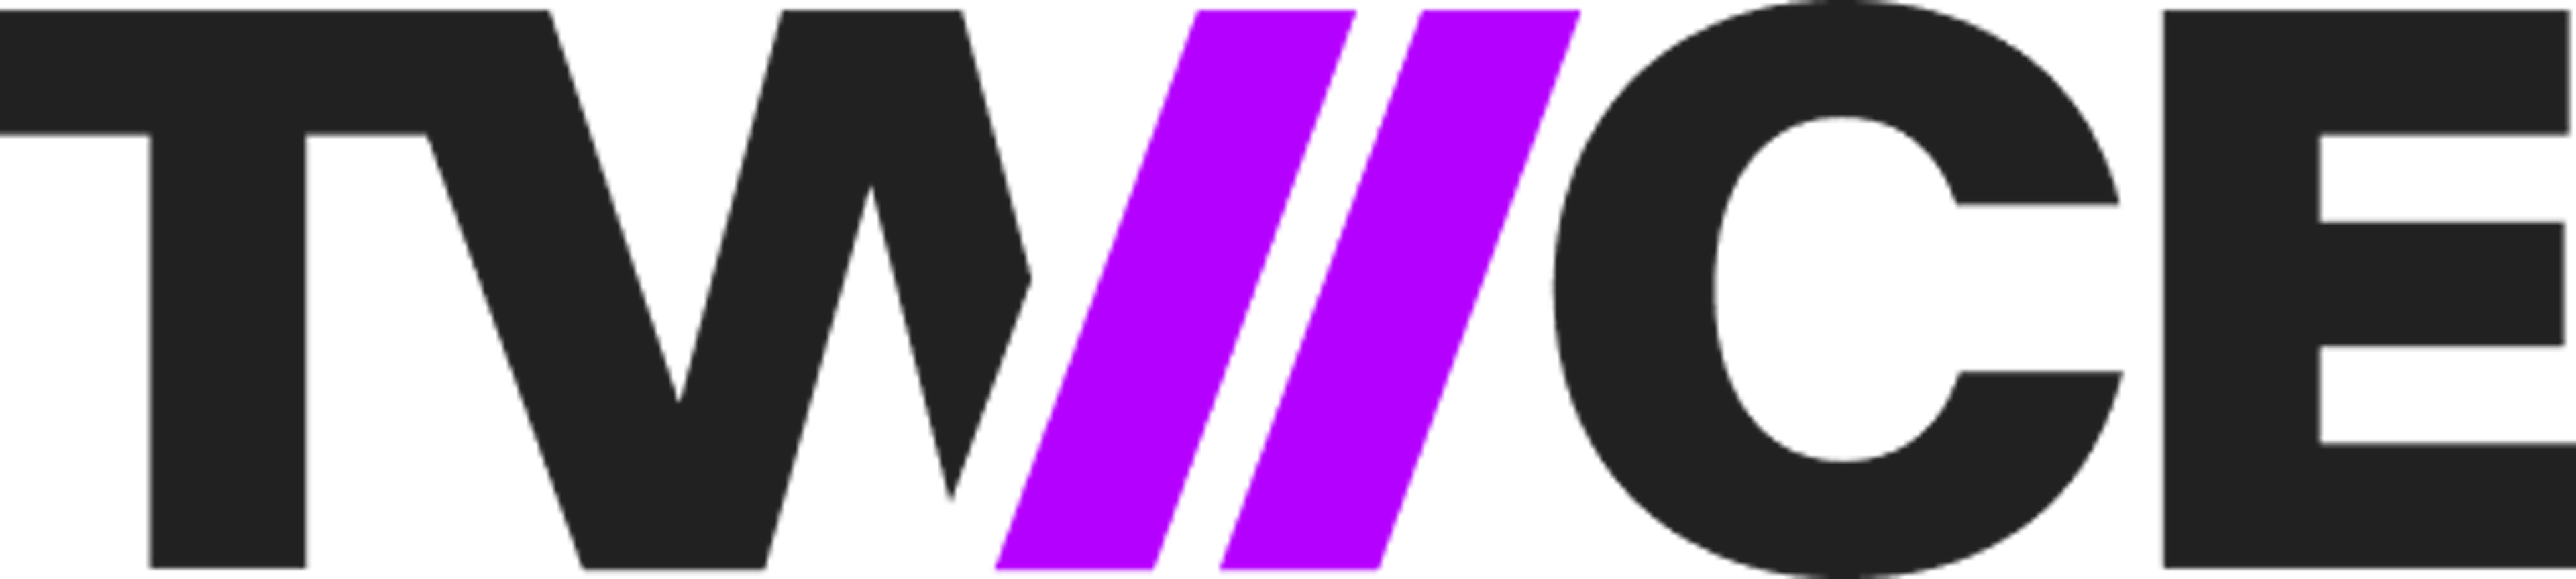 Twice Commerce Logo